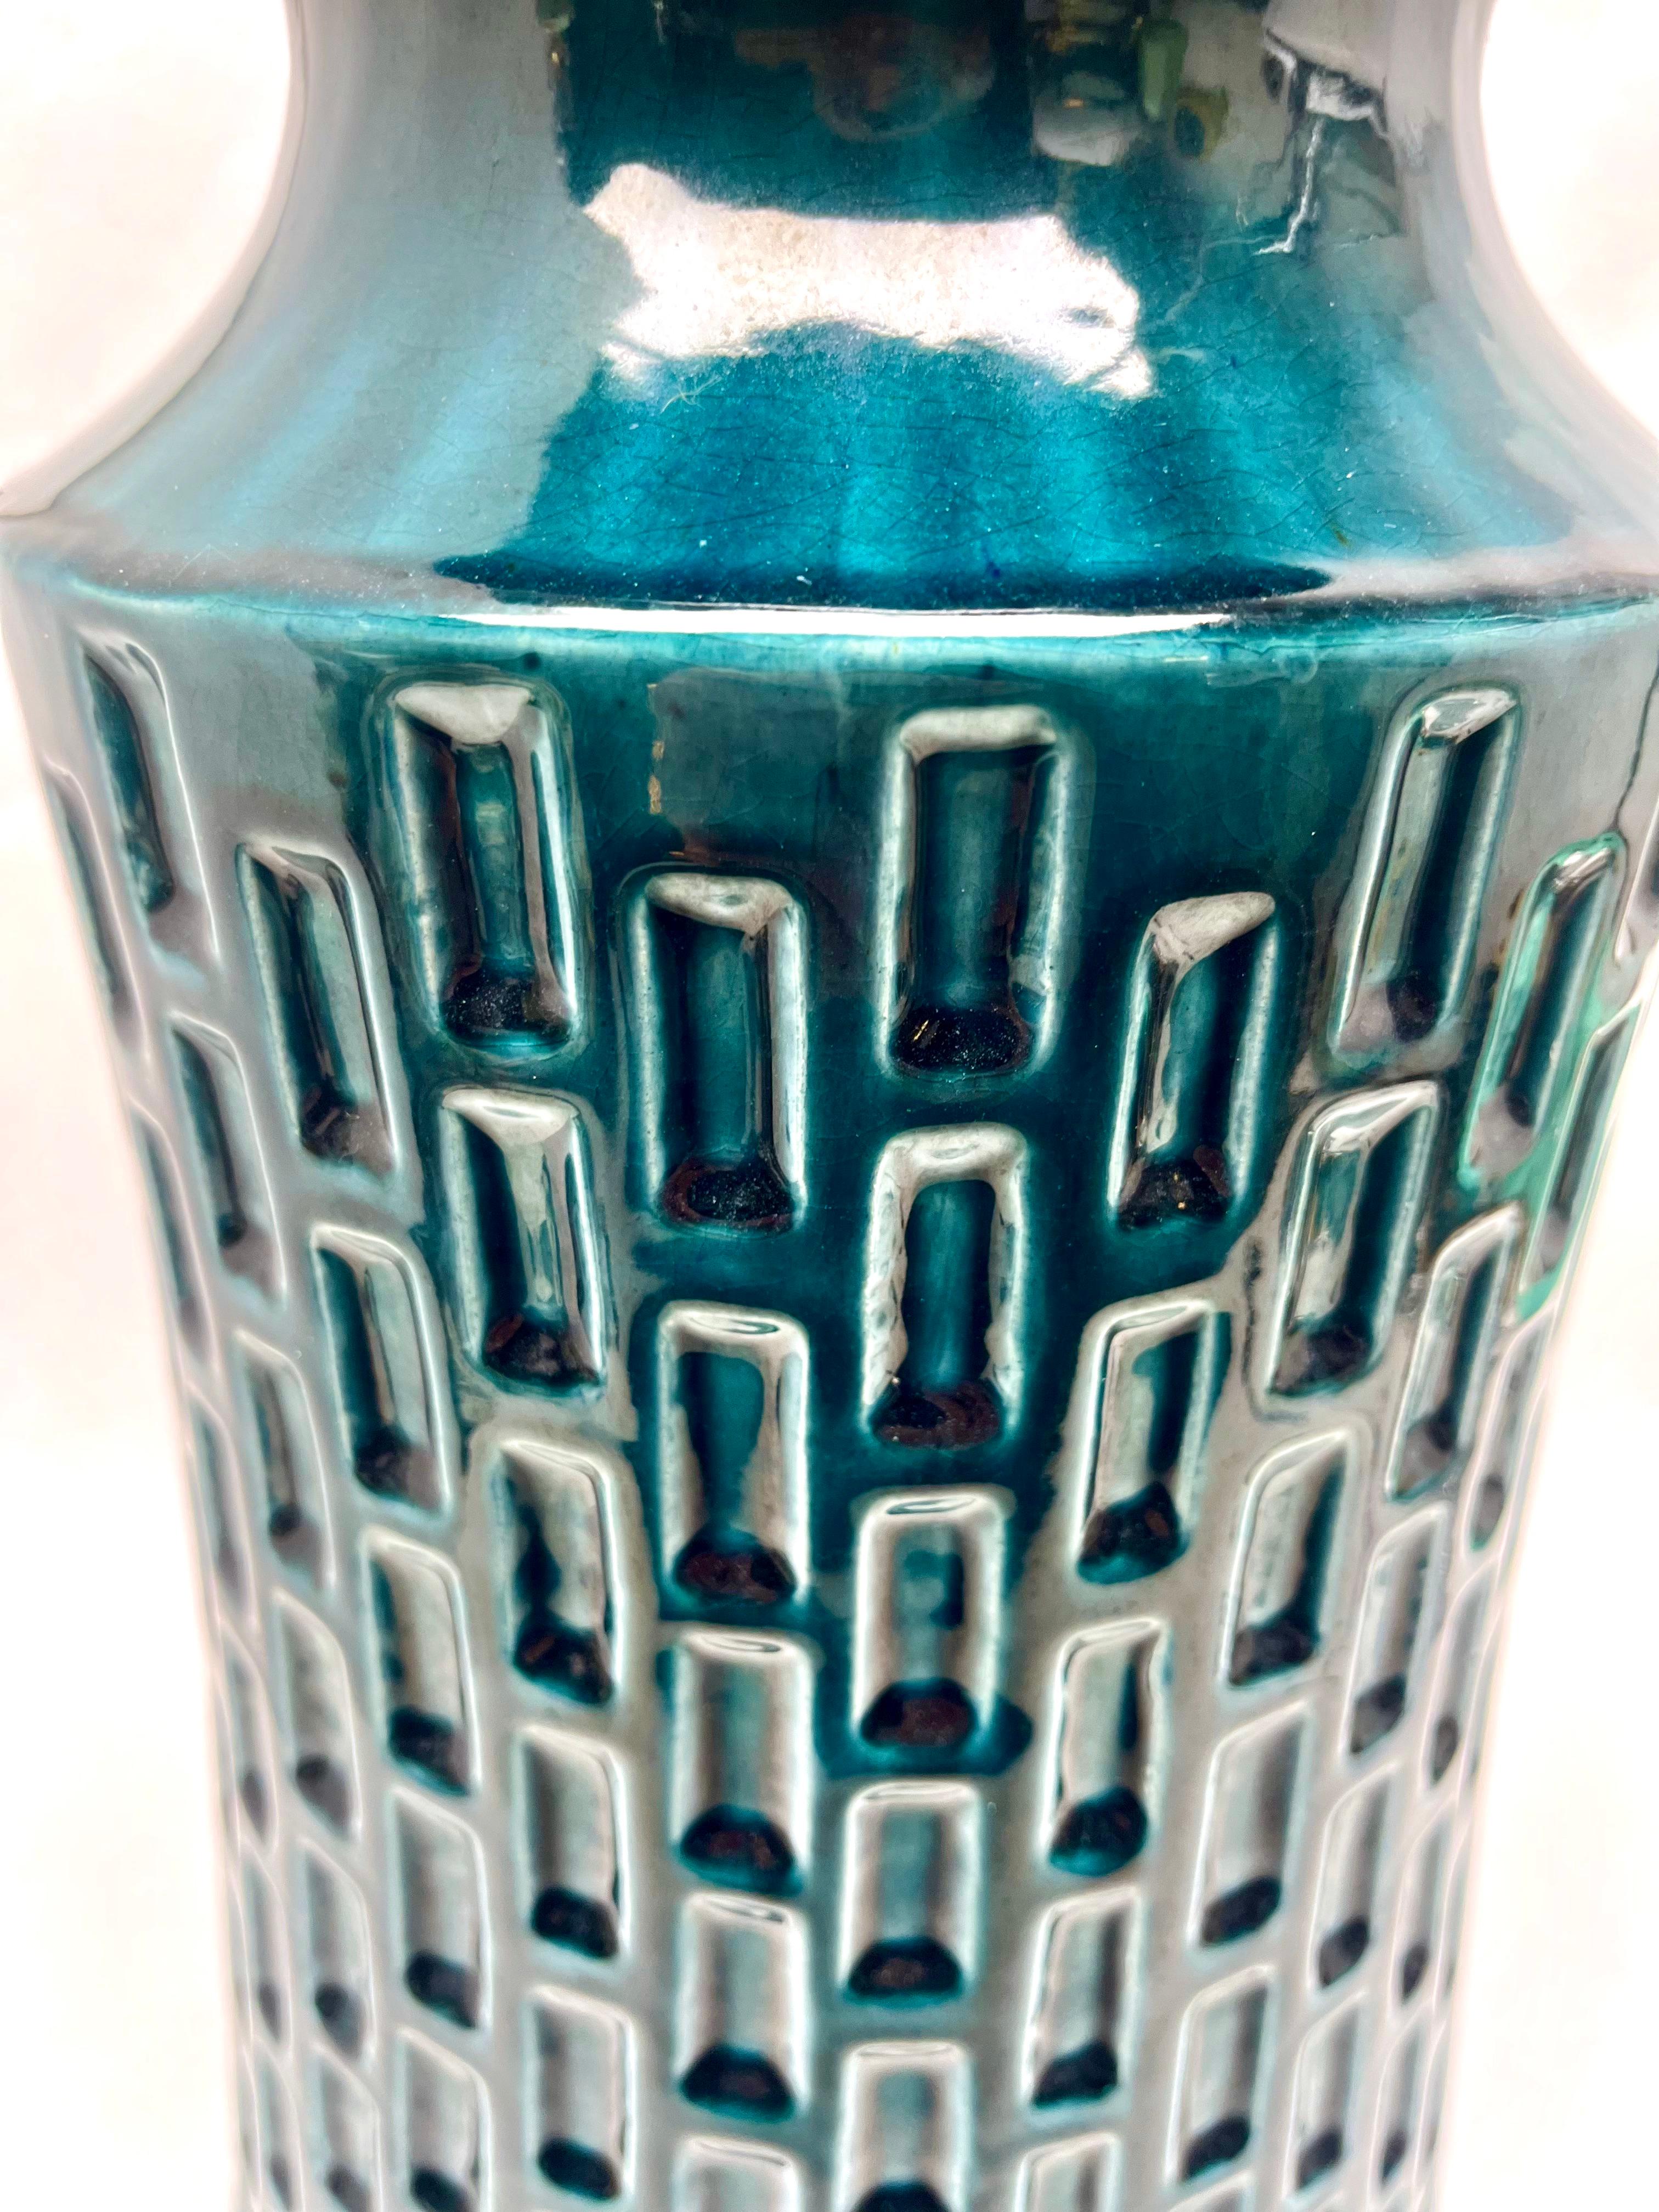 Vase vintage Jasba en glaçure bleue à gouttes, avec un motif en creux.
En regardant de près, la glaçure comprend des mouchetures noires et bleues de mer qui donnent plus de profondeur aux surfaces.

N'hésitez pas à nous contacter pour toute autre